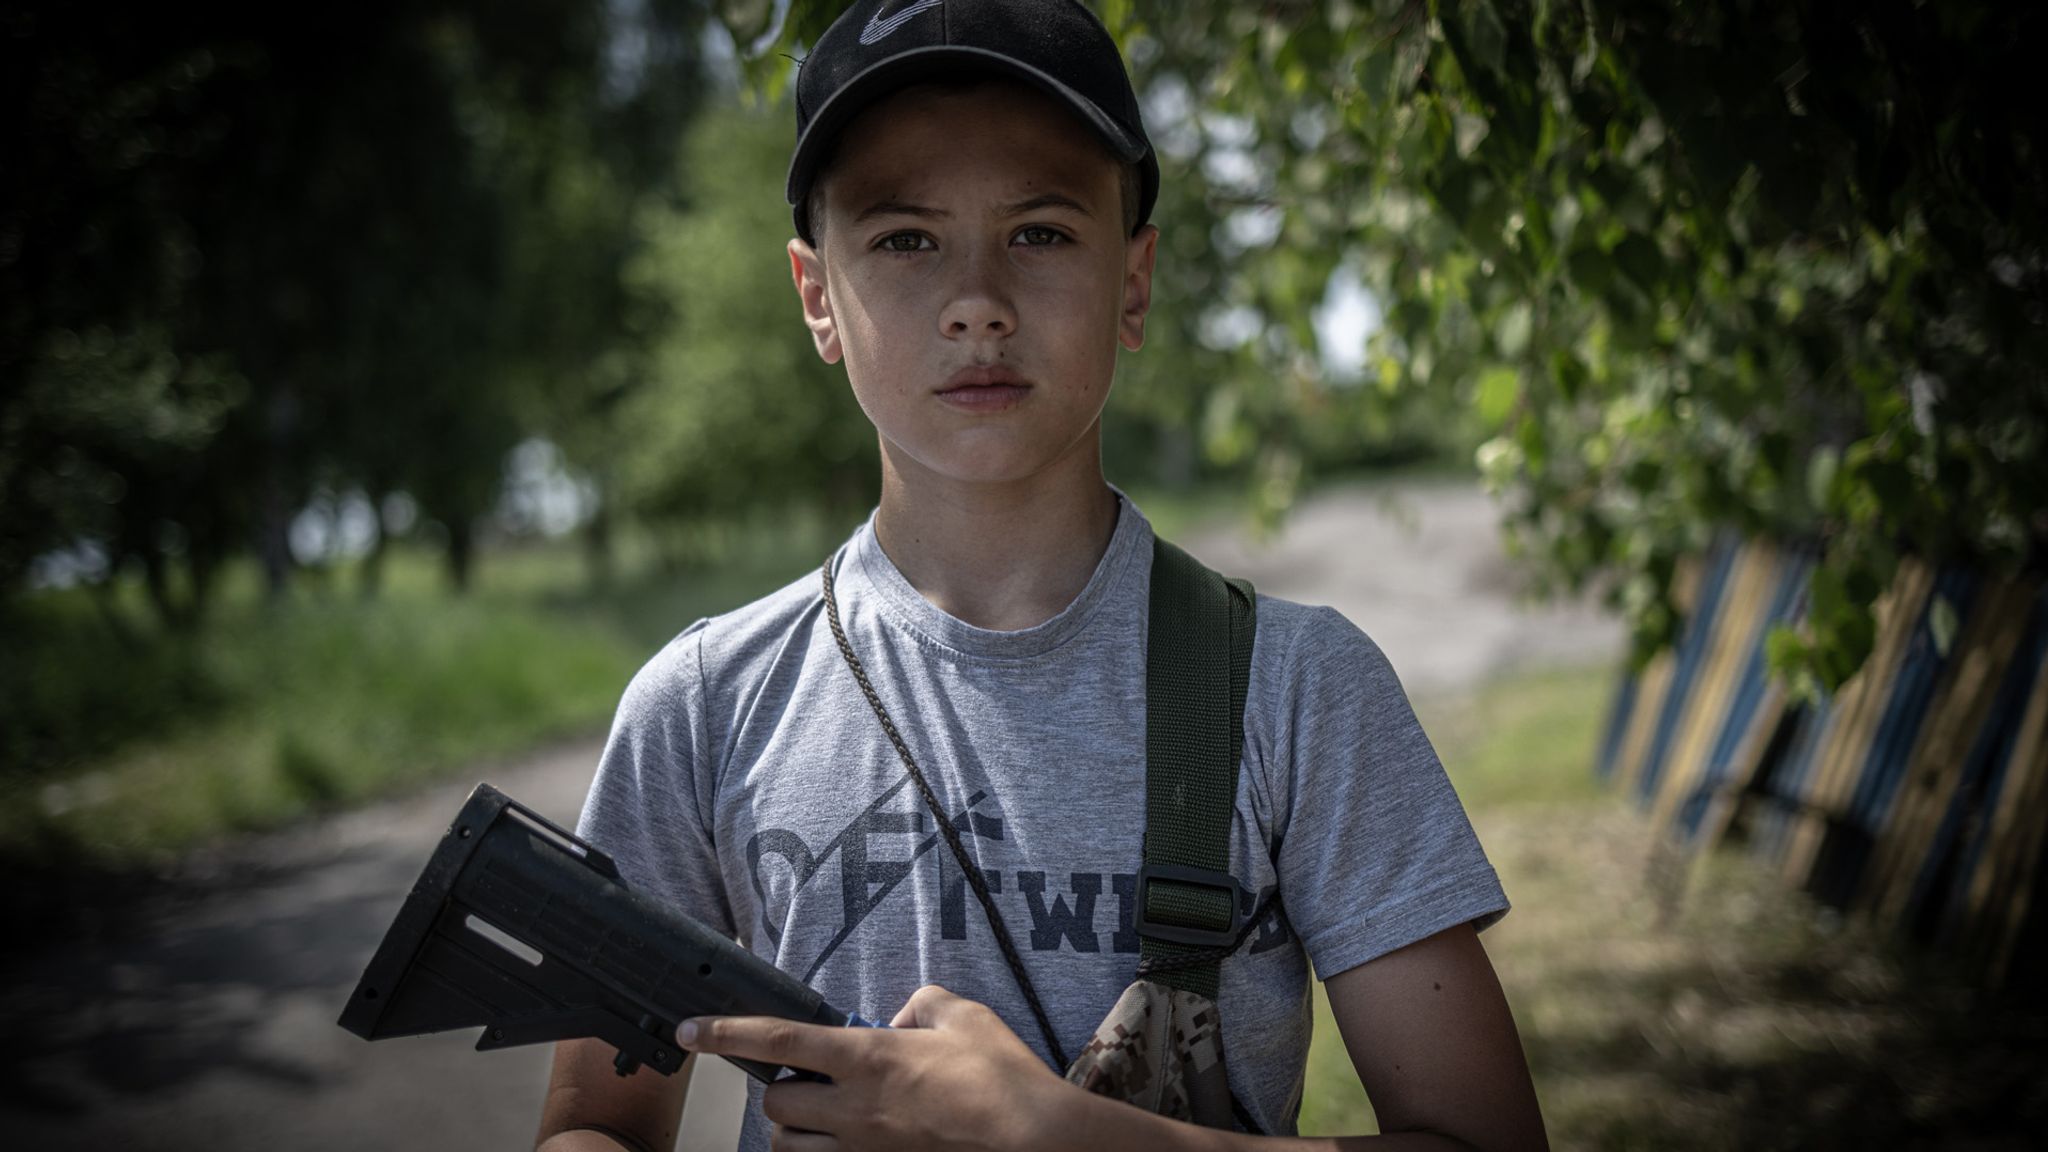 Ukraine war: Children with toy guns manning checkpoints, while body ...